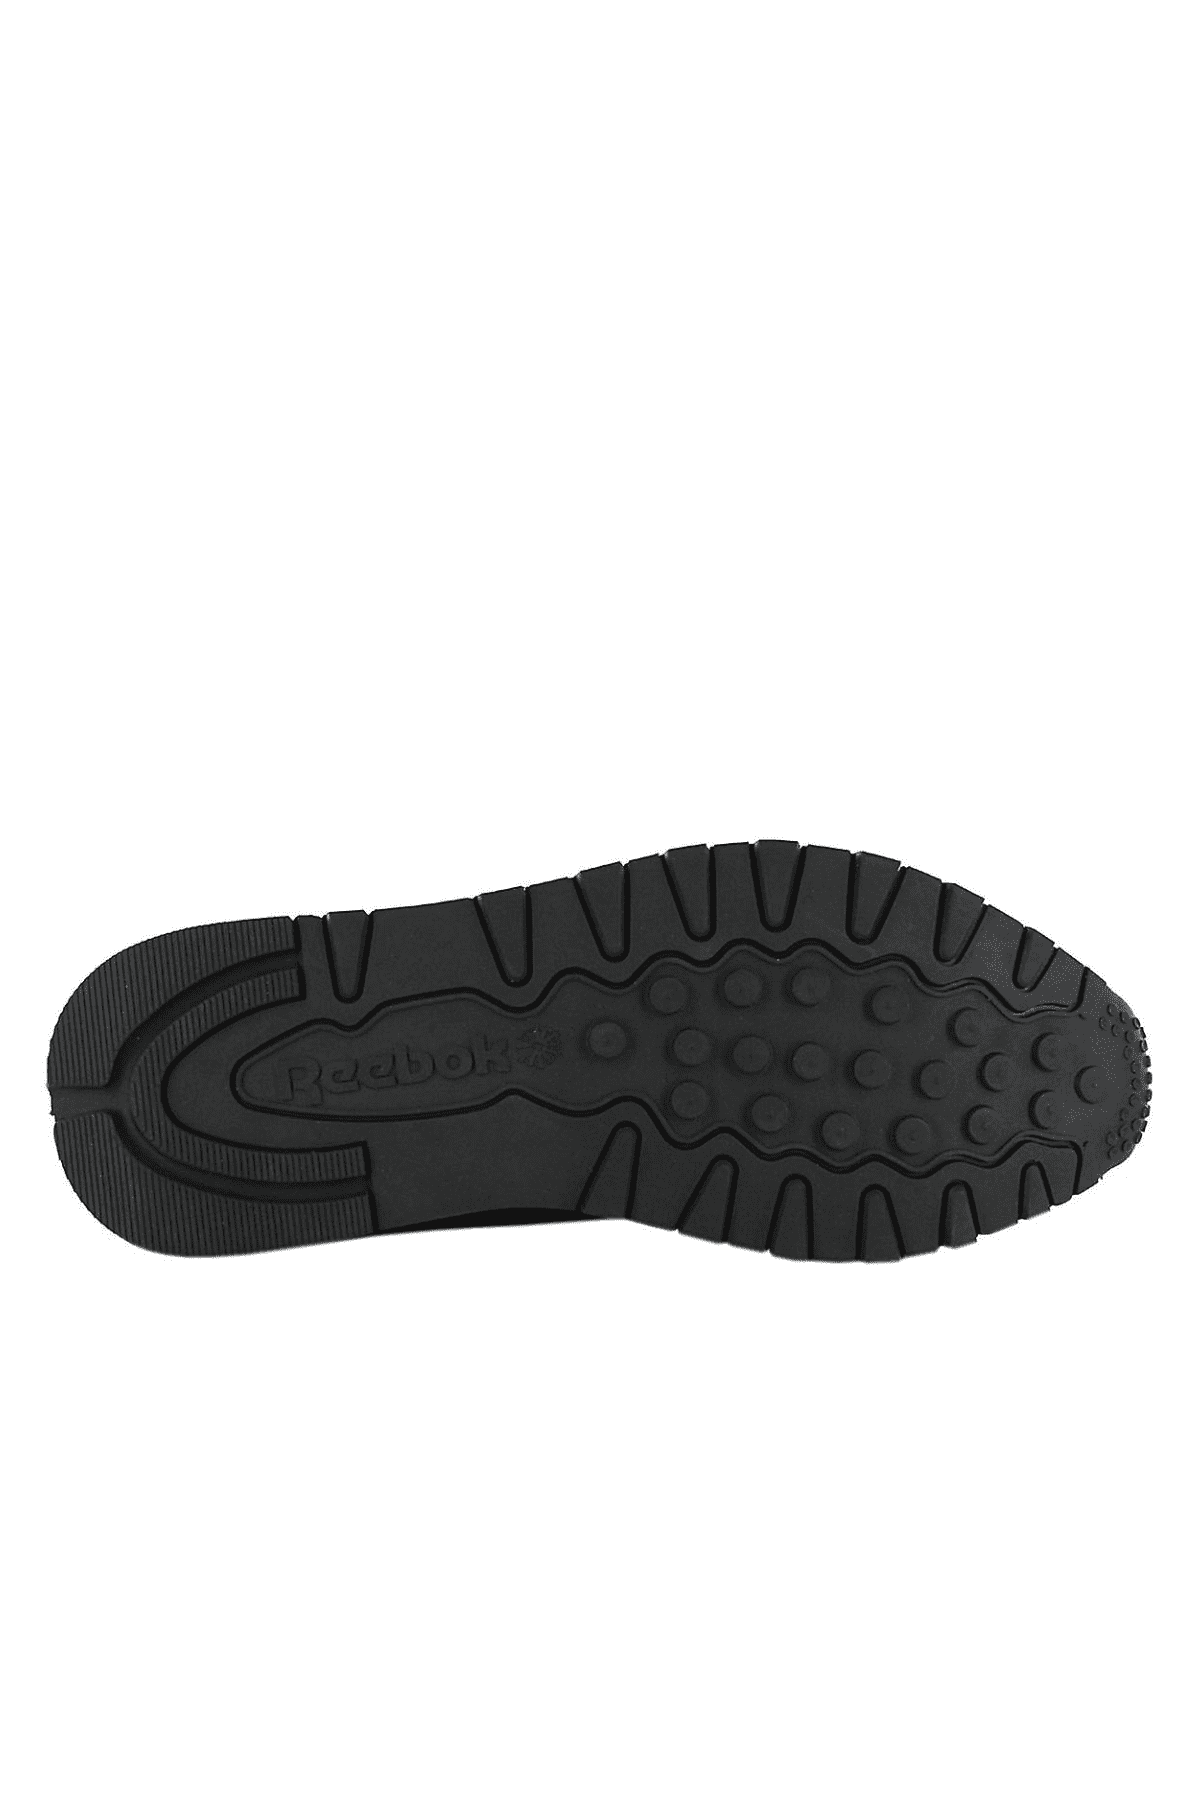 Reebok Classic Leather נעלי ספורט ריבוק עור שחור יוניסקס-Reebok-36-נאקו